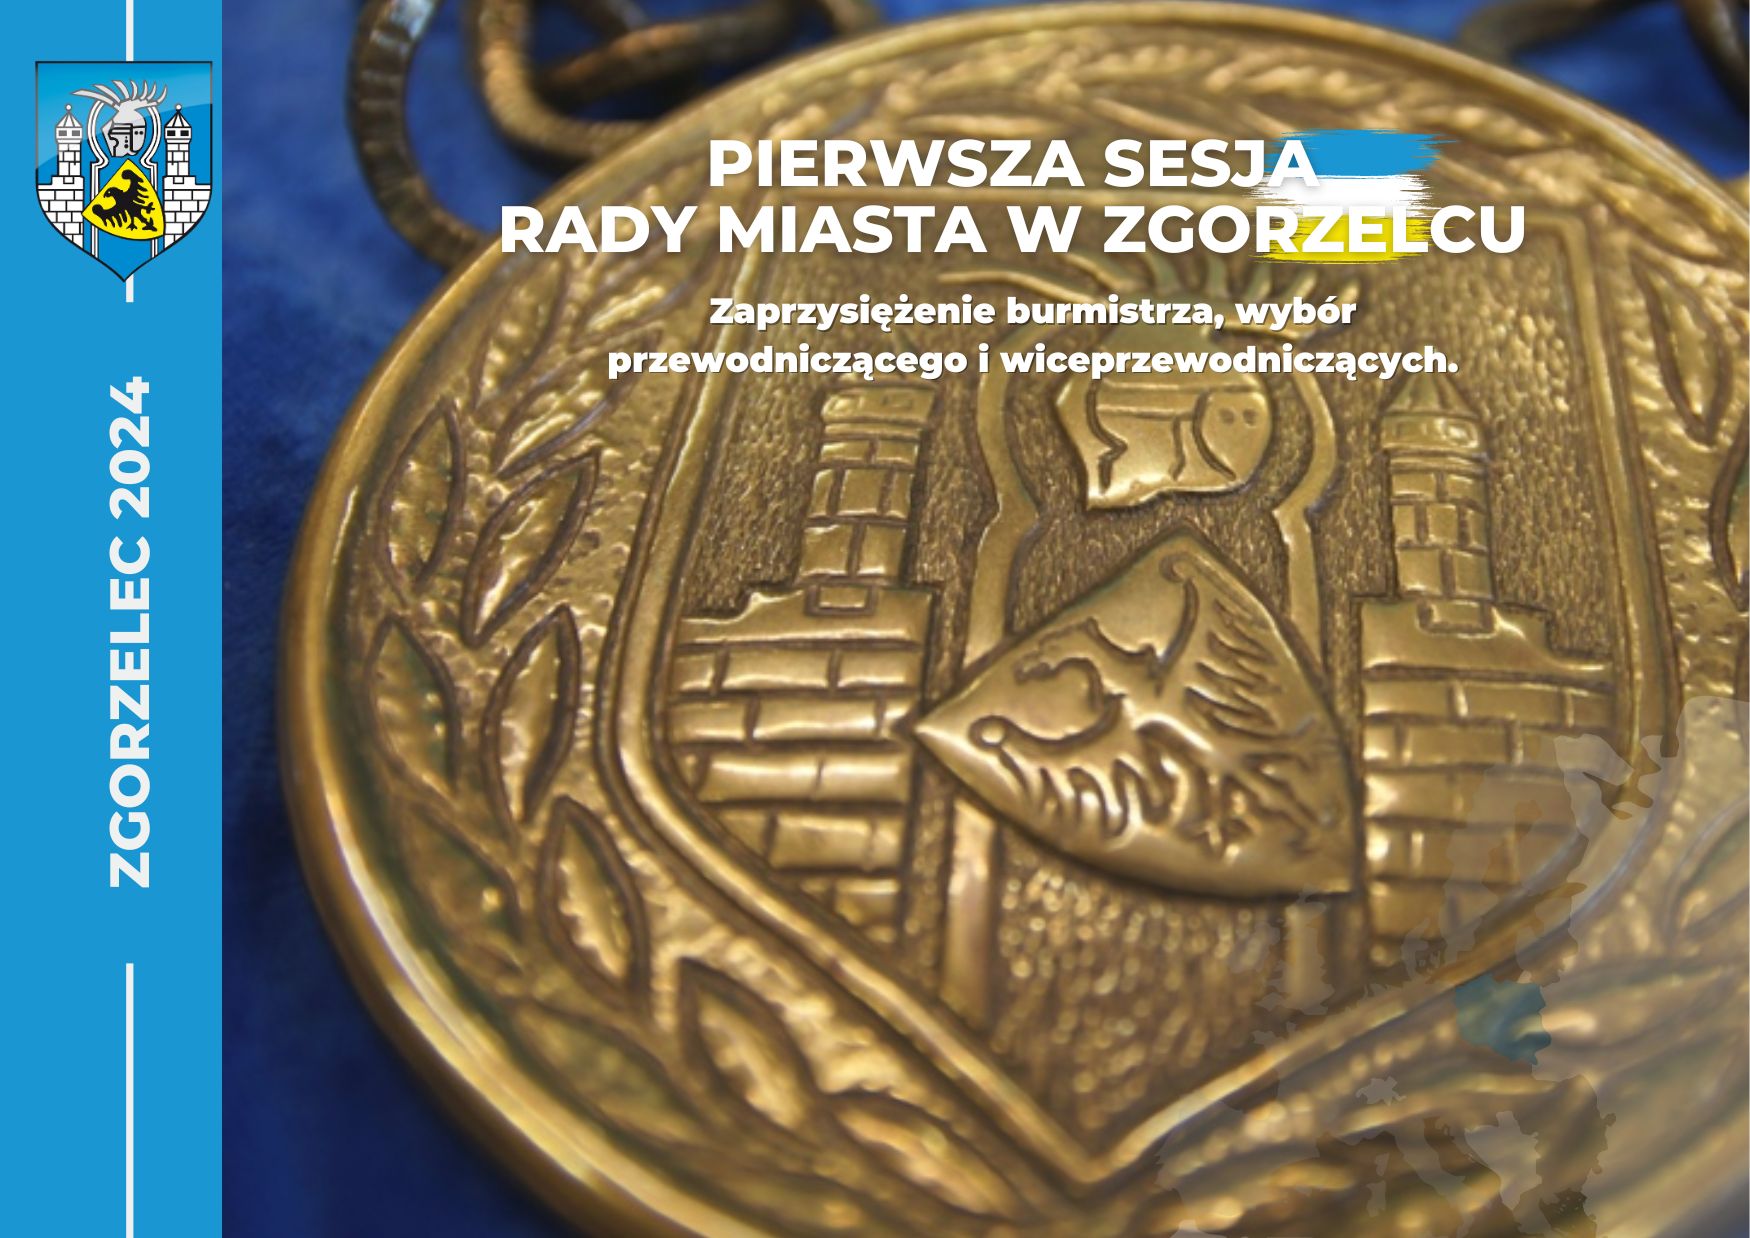 You are currently viewing Sesja inauguracyjna nowej Rady Miasta Zgorzelec i zaprzysiężenie burmistrza Zgorzelca